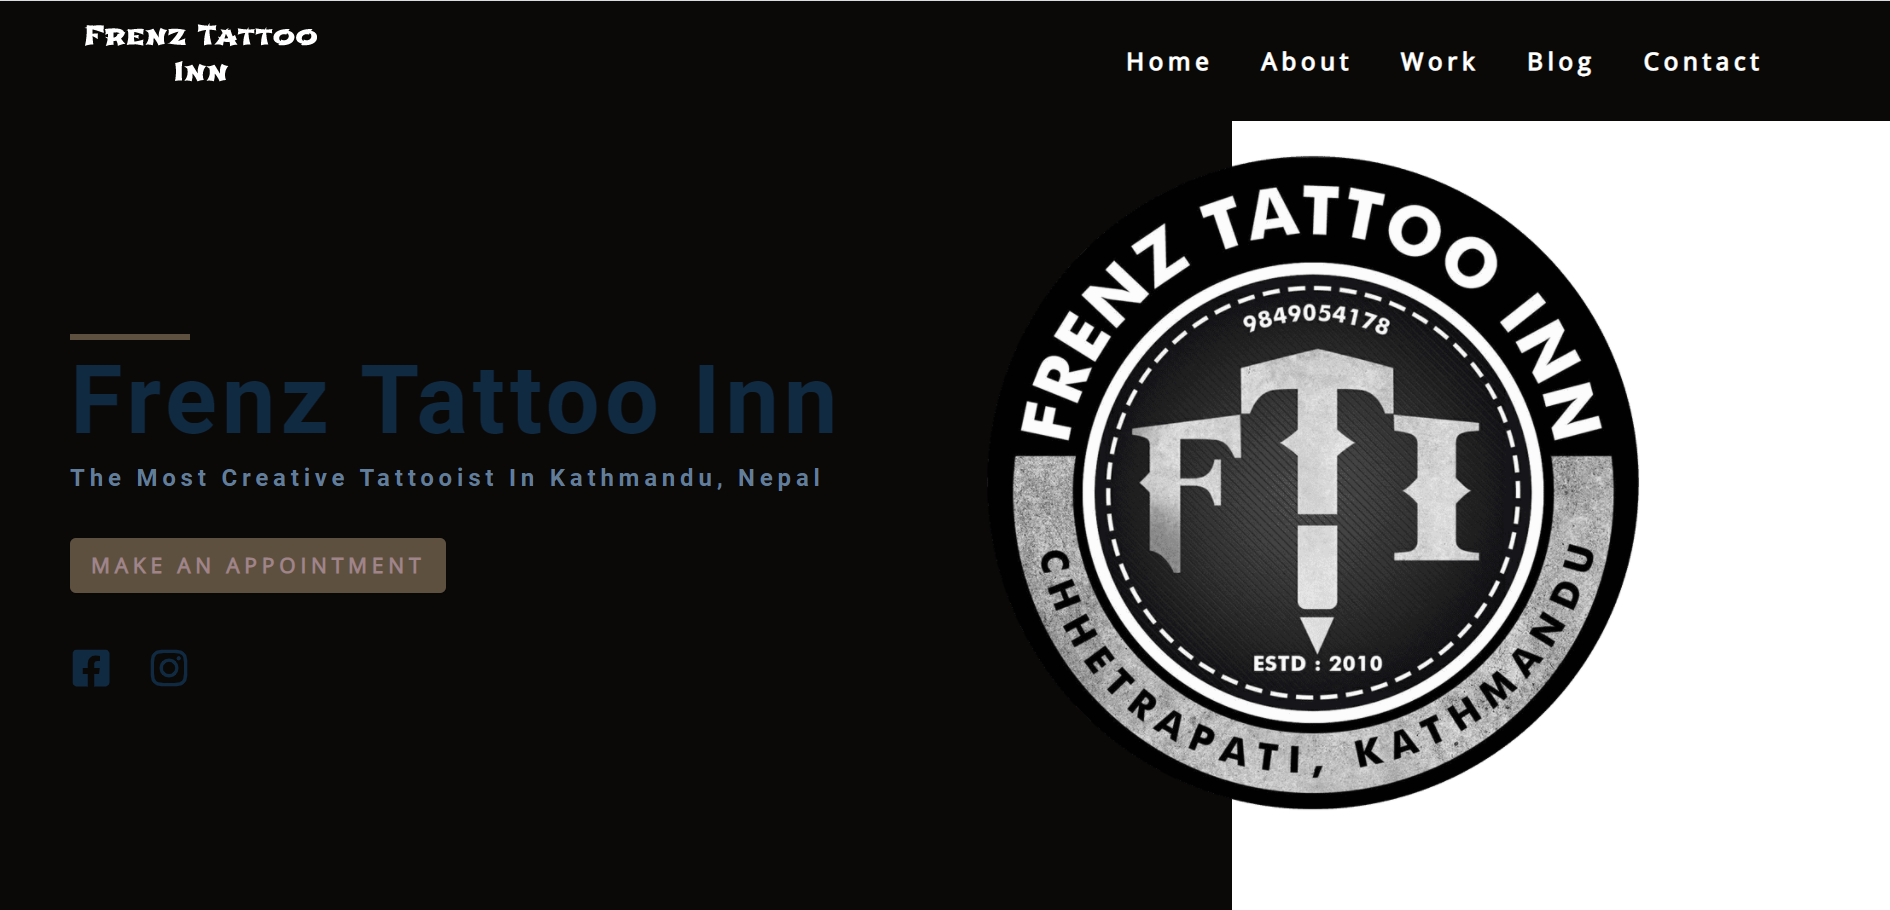 Business Website for Tattoo Artist - Frenz Tattoo Inn